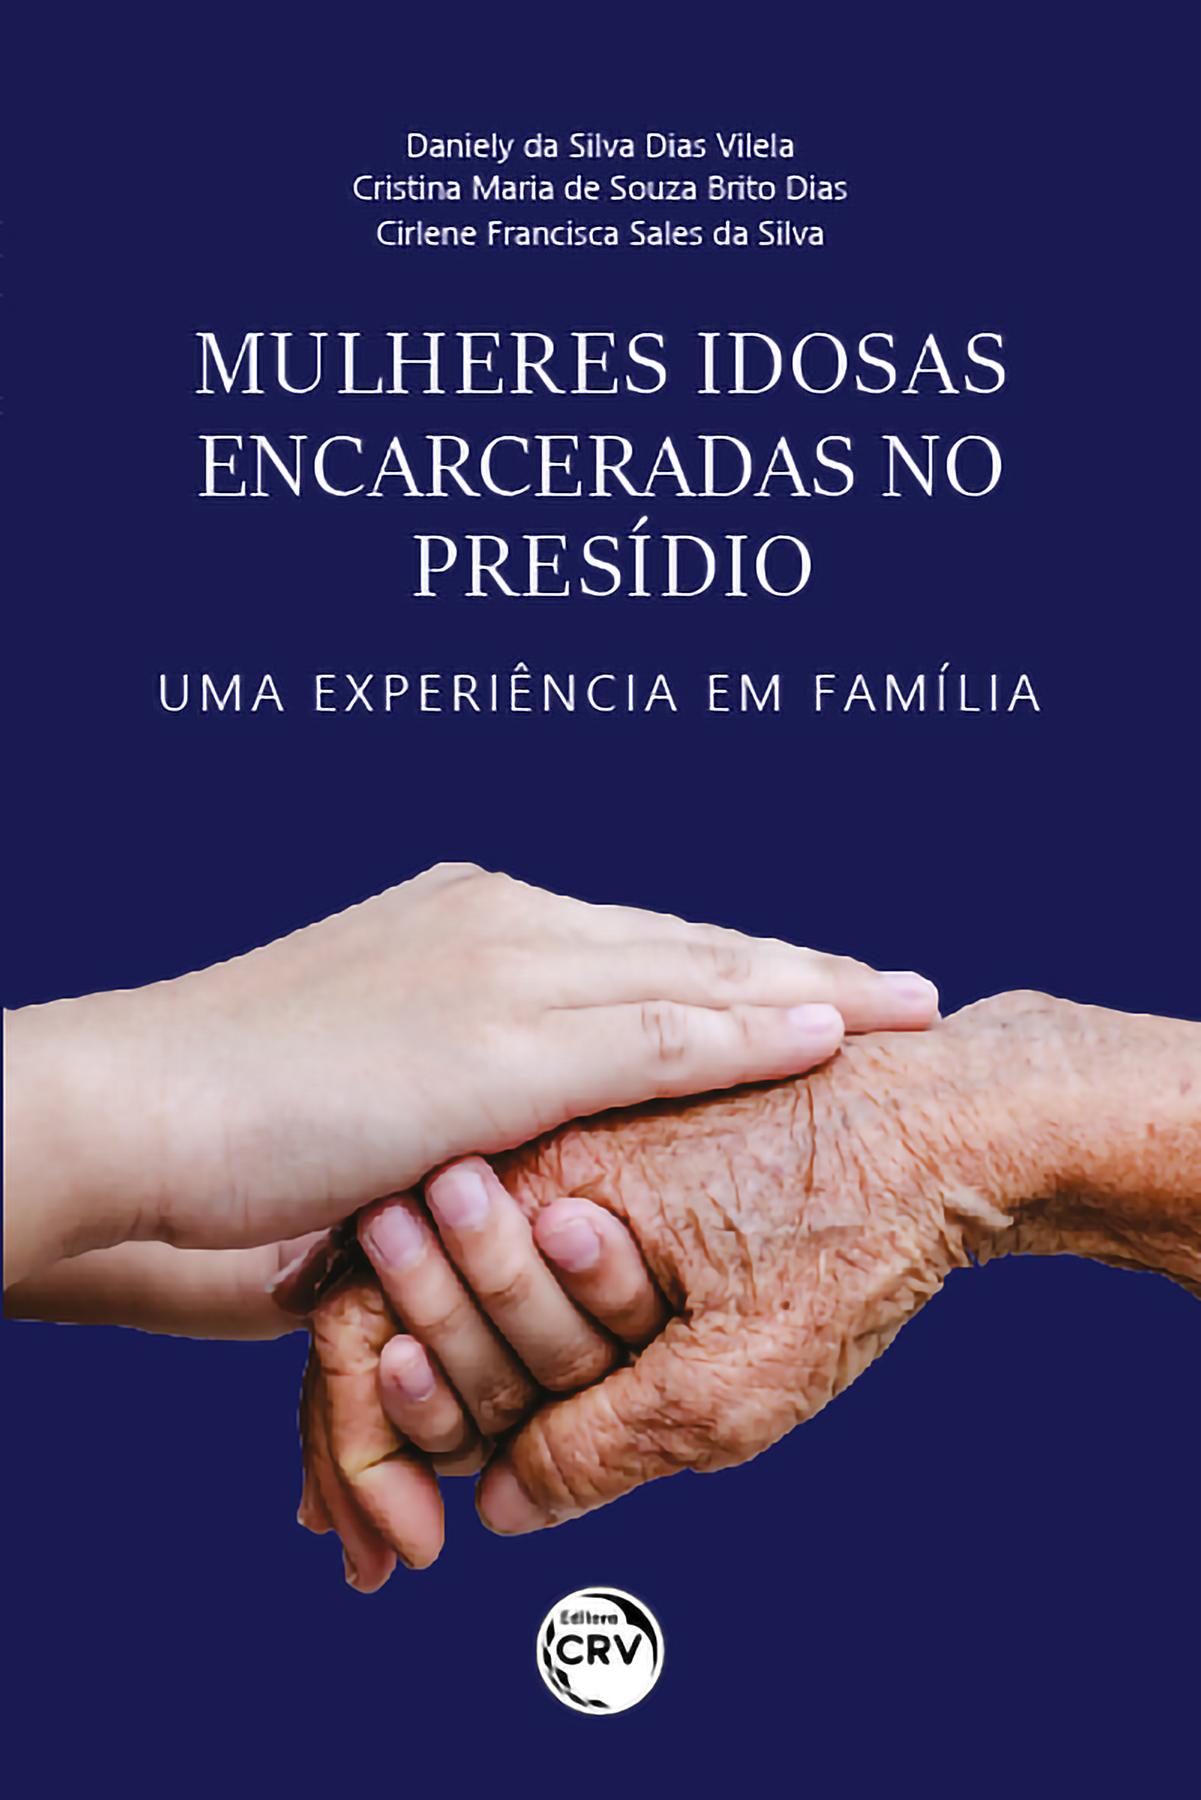 Capa do livro: Mulheres idosas encarceradas no presídio:<br> Uma experiência em família